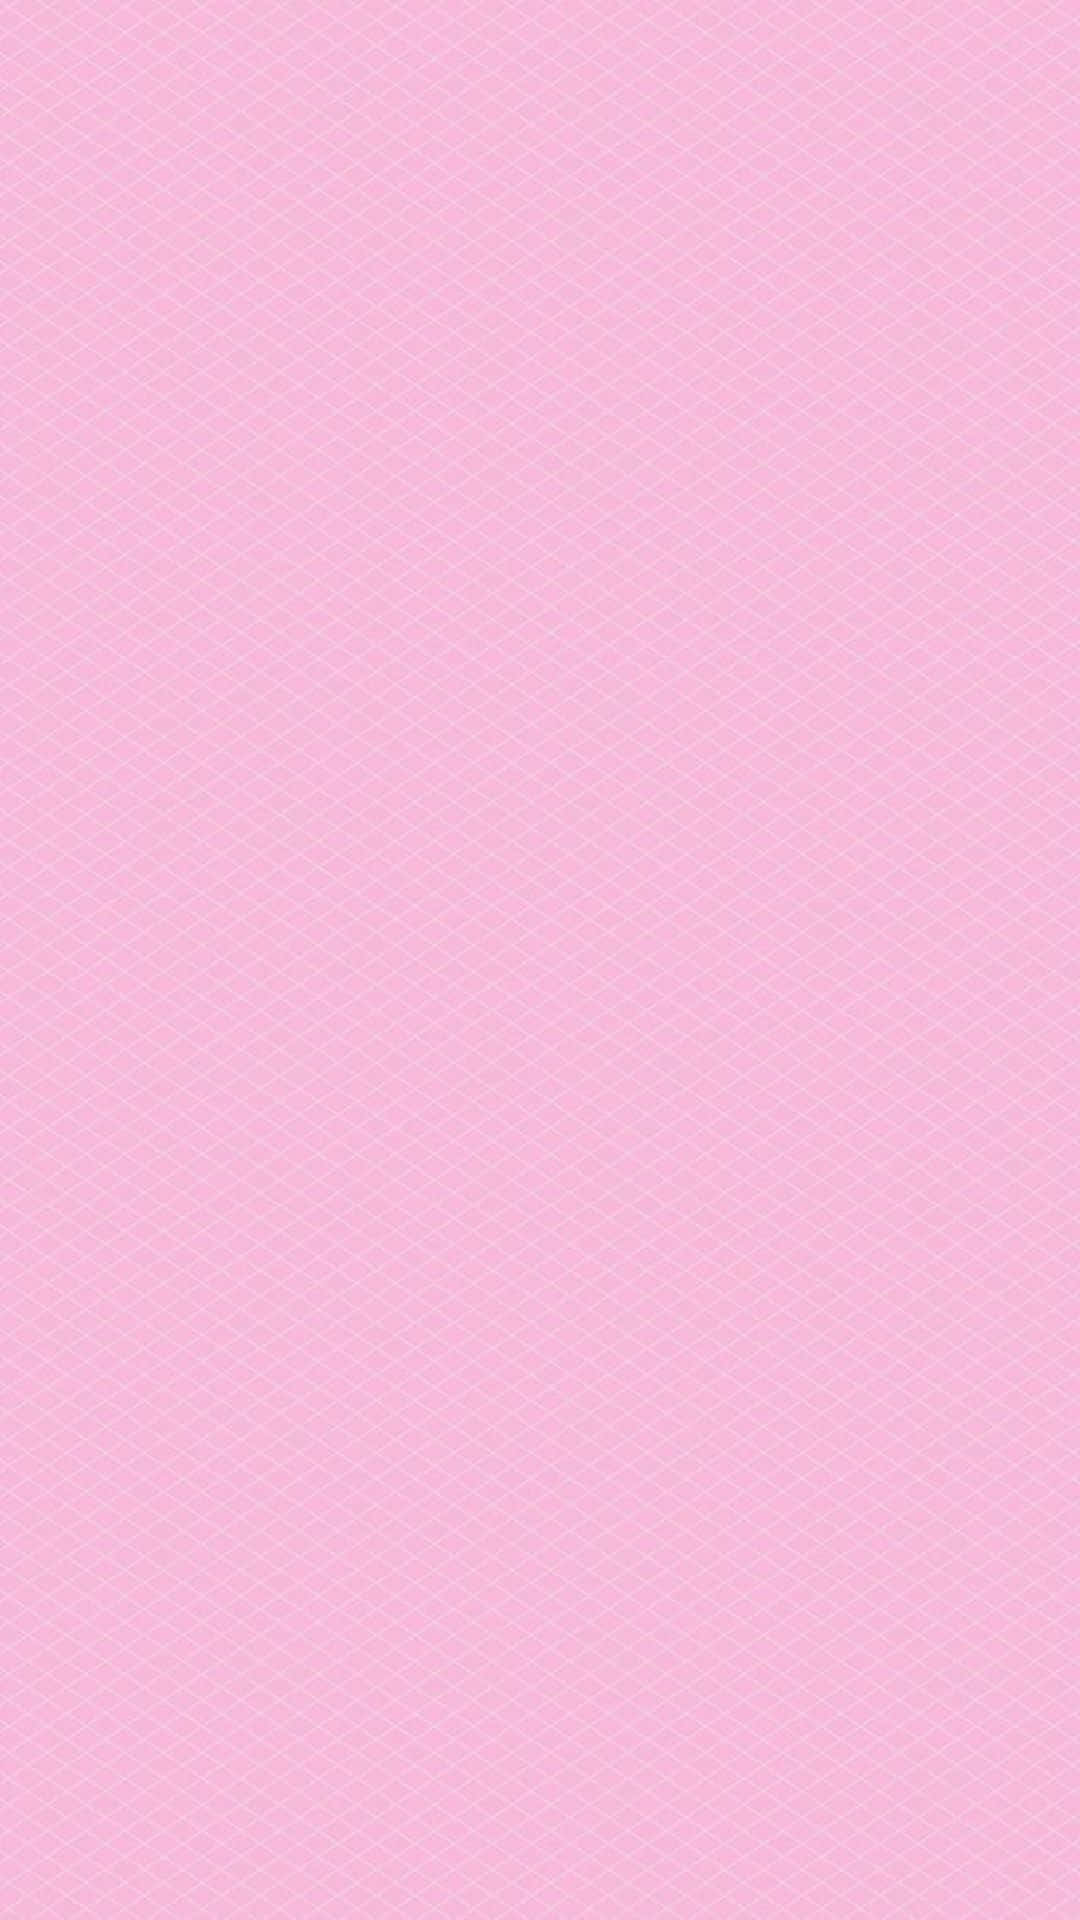 Einleuchtendes Pink In Kräftiger Farbe Auf Einem Hellgrauen Hintergrund Festgehalten. Wallpaper